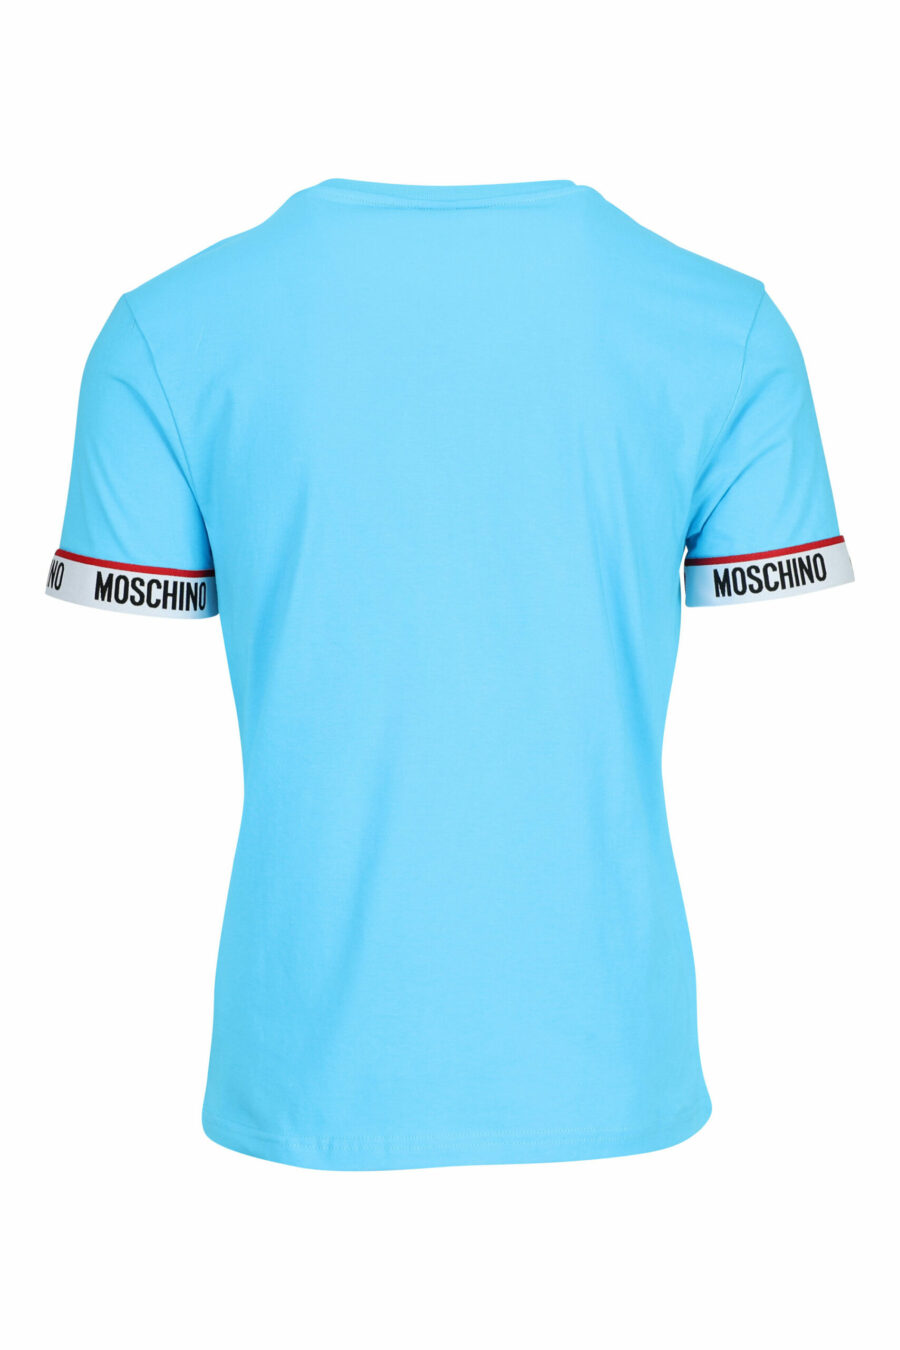 Camiseta azul claro con logo blanco en mangas - 667113604626 1 scaled